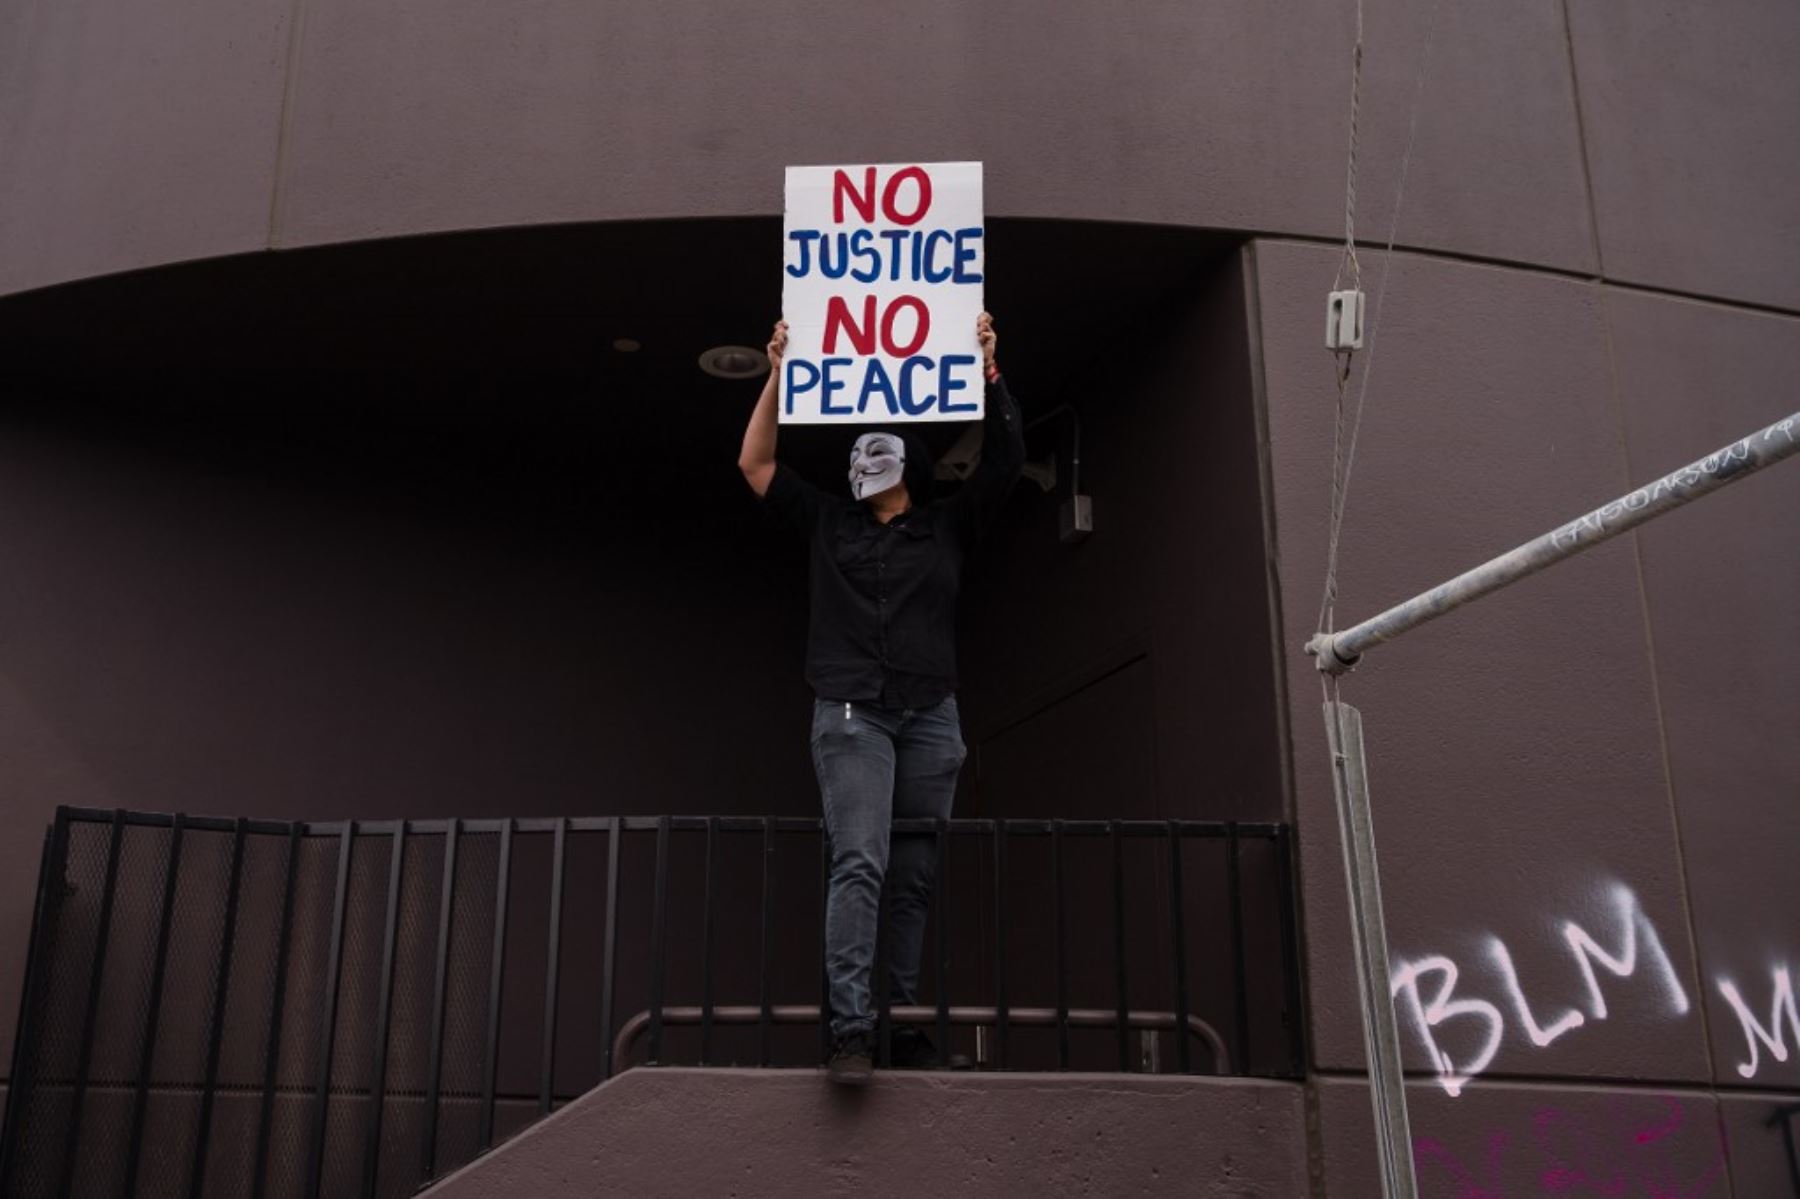 Un manifestante con una máscara de Guy Fawkes sostiene un cartel que dice "No Justice No Peace" en Los Ángeles el 30 de mayo de 2020 luego de una protesta contra la muerte de George Floyd. Foto: AFP